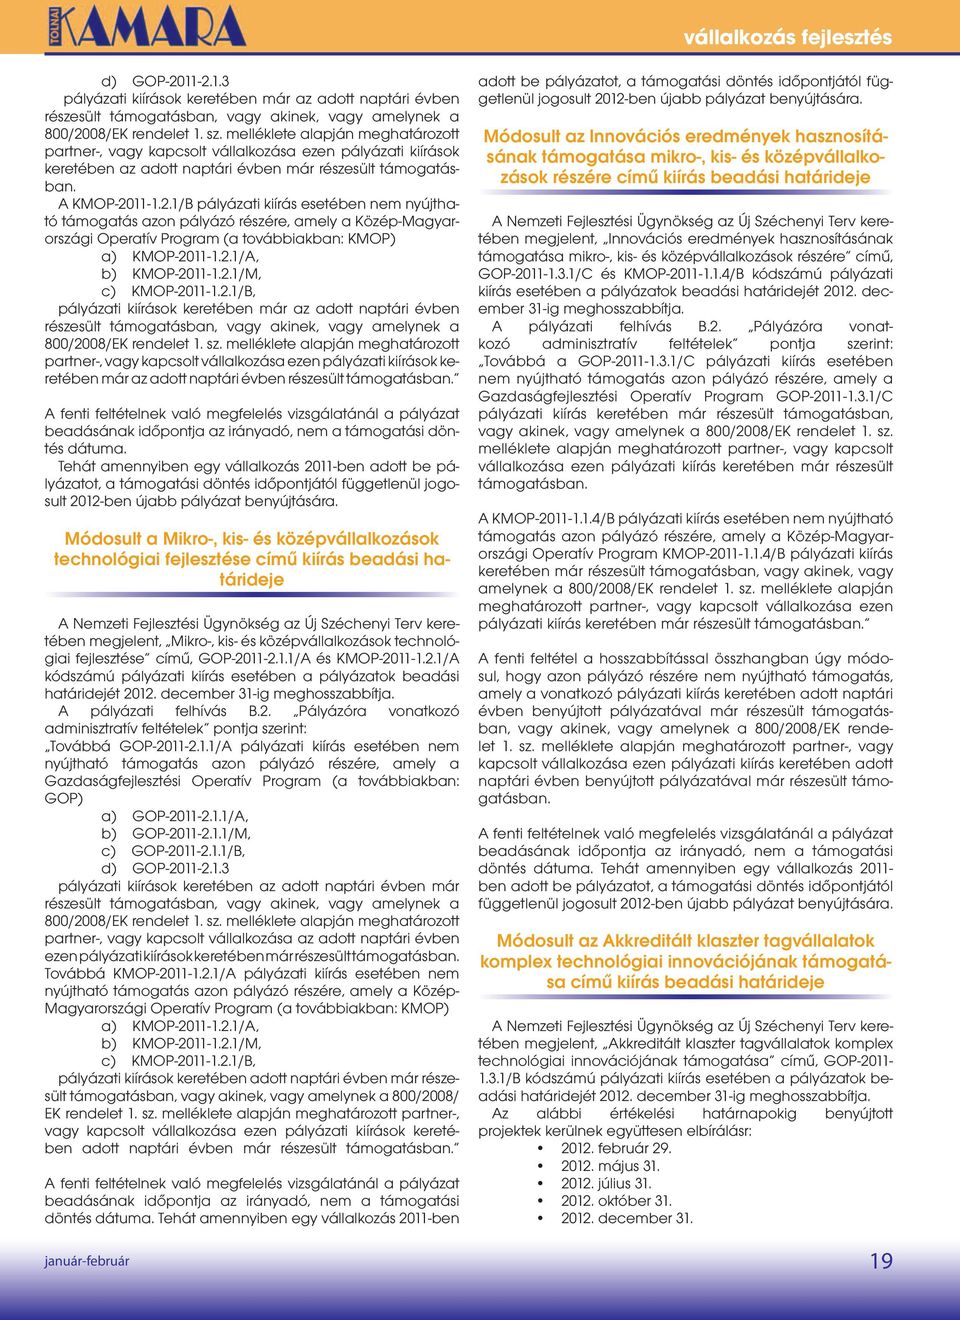 11-1.2.1/B pályázati kiírás esetében nem nyújtható támogatás azon pályázó részére, amely a Közép-Magyarországi Operatív Program (a továbbiakban: KMOP) a) KMOP-2011-1.2.1/A, b) KMOP-2011-1.2.1/M, c) KMOP-2011-1.